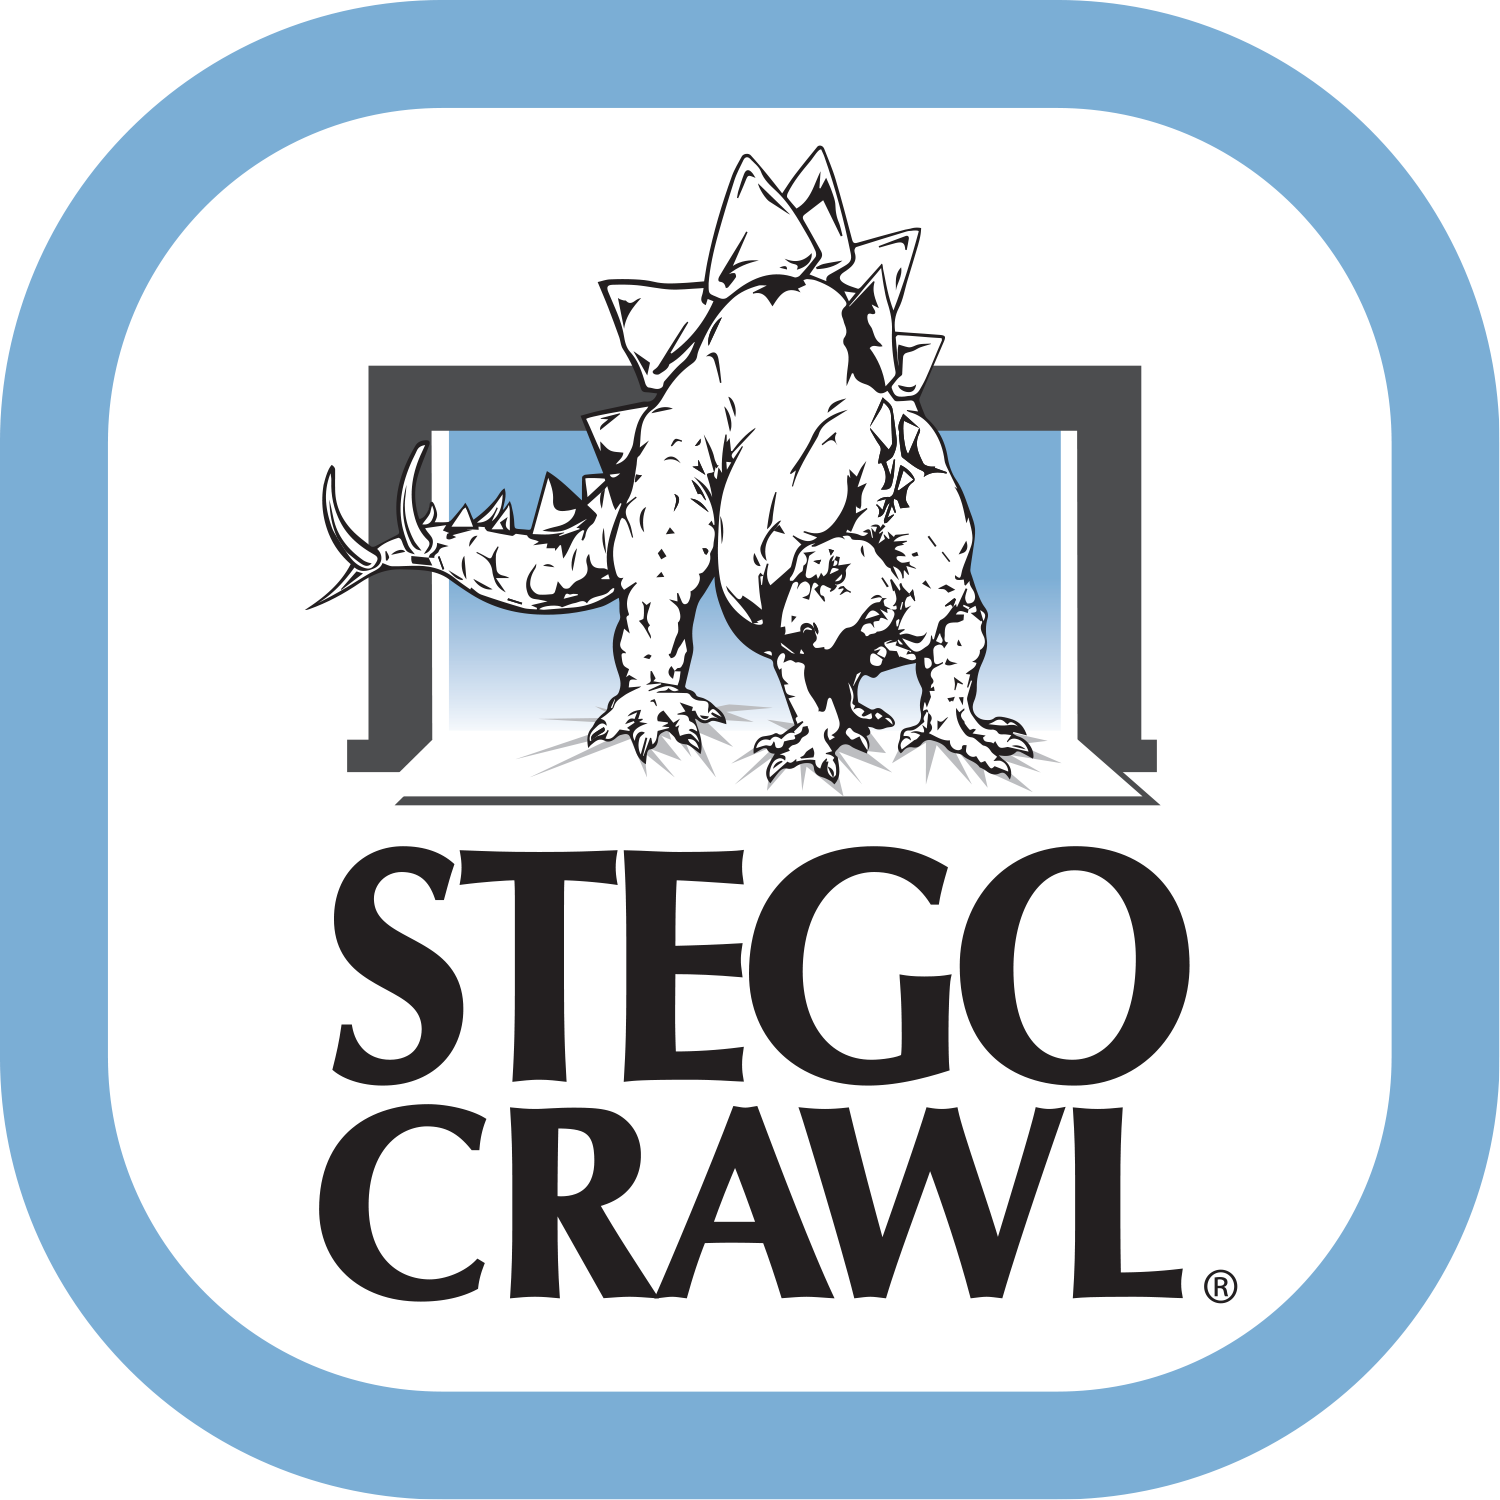 StegoCrawl-Brand-Logo-1